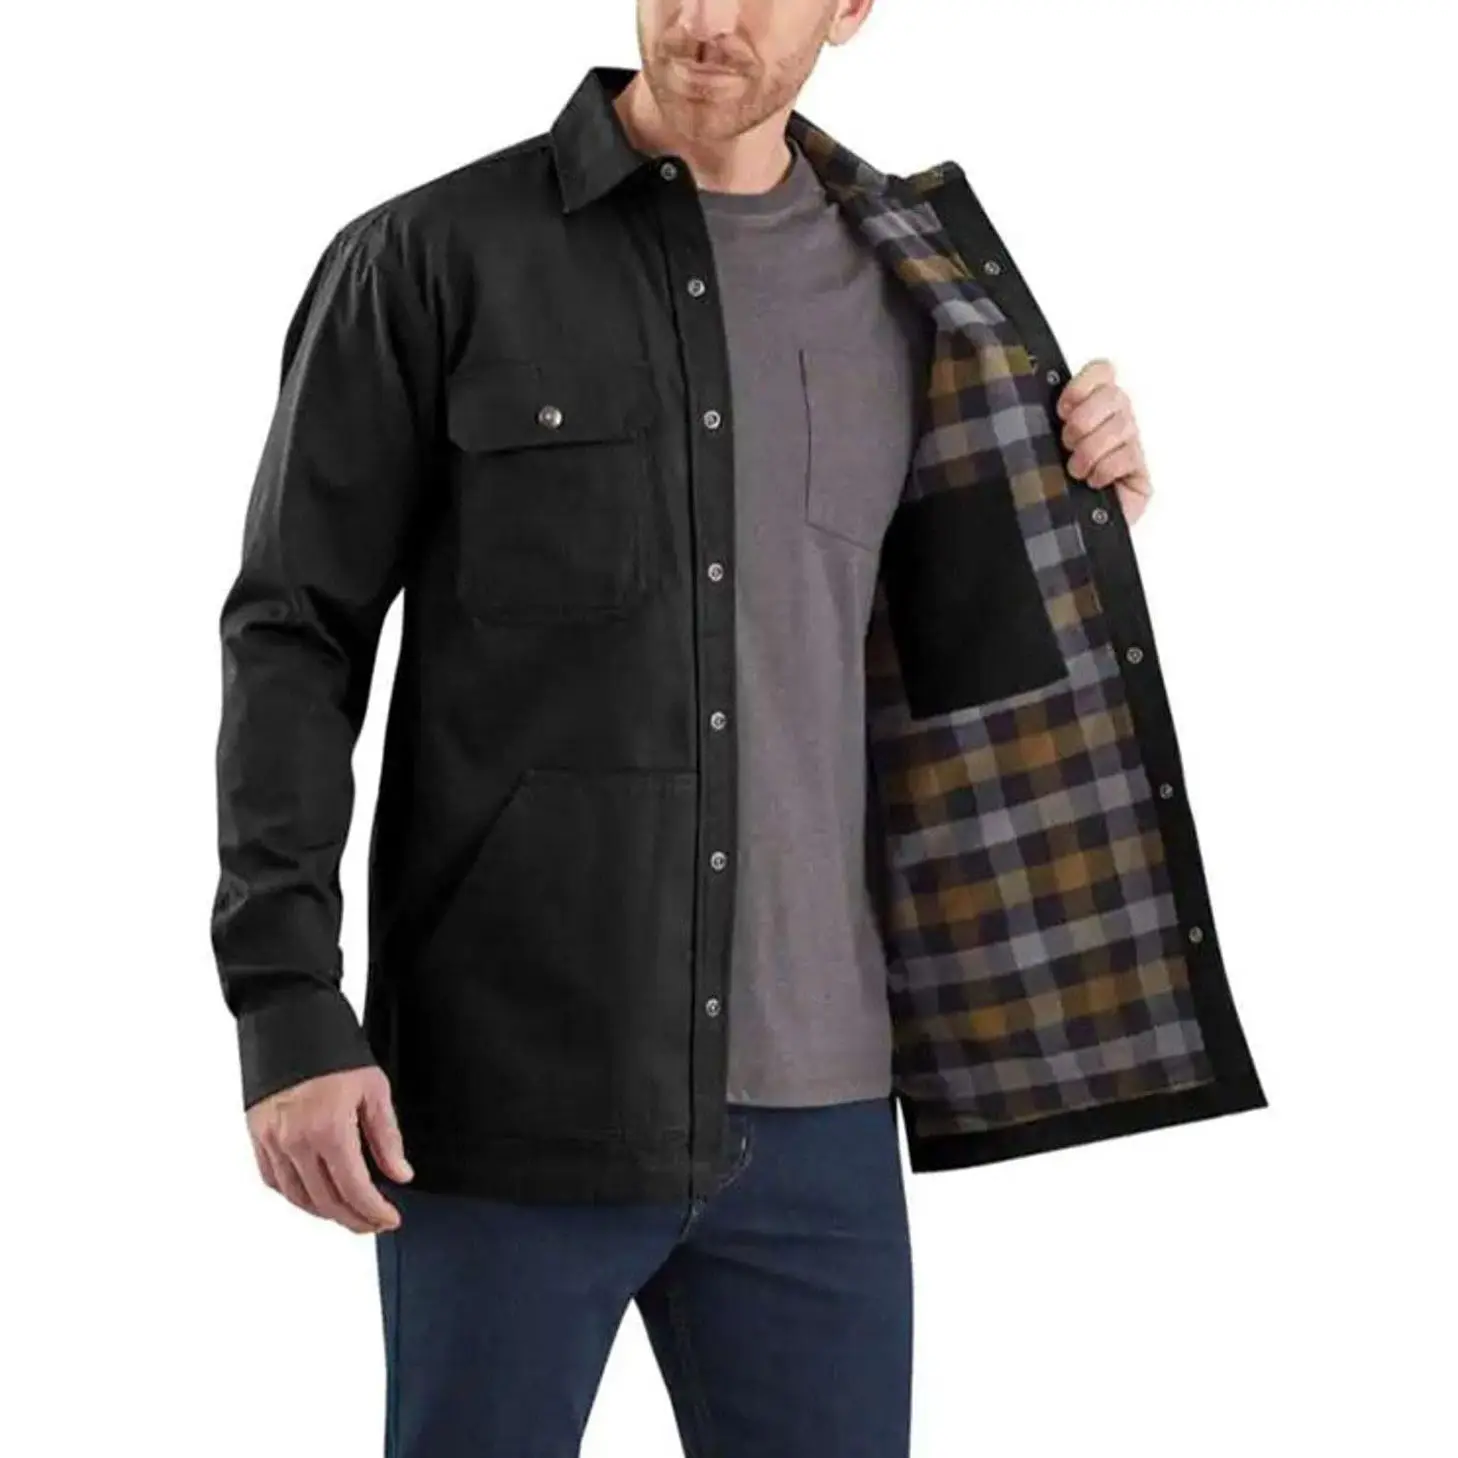 ZN-AG01 kış giyim Men_s büyük ve uzun boylu sağlam Flex uzun kollu Shacket ceket ceket